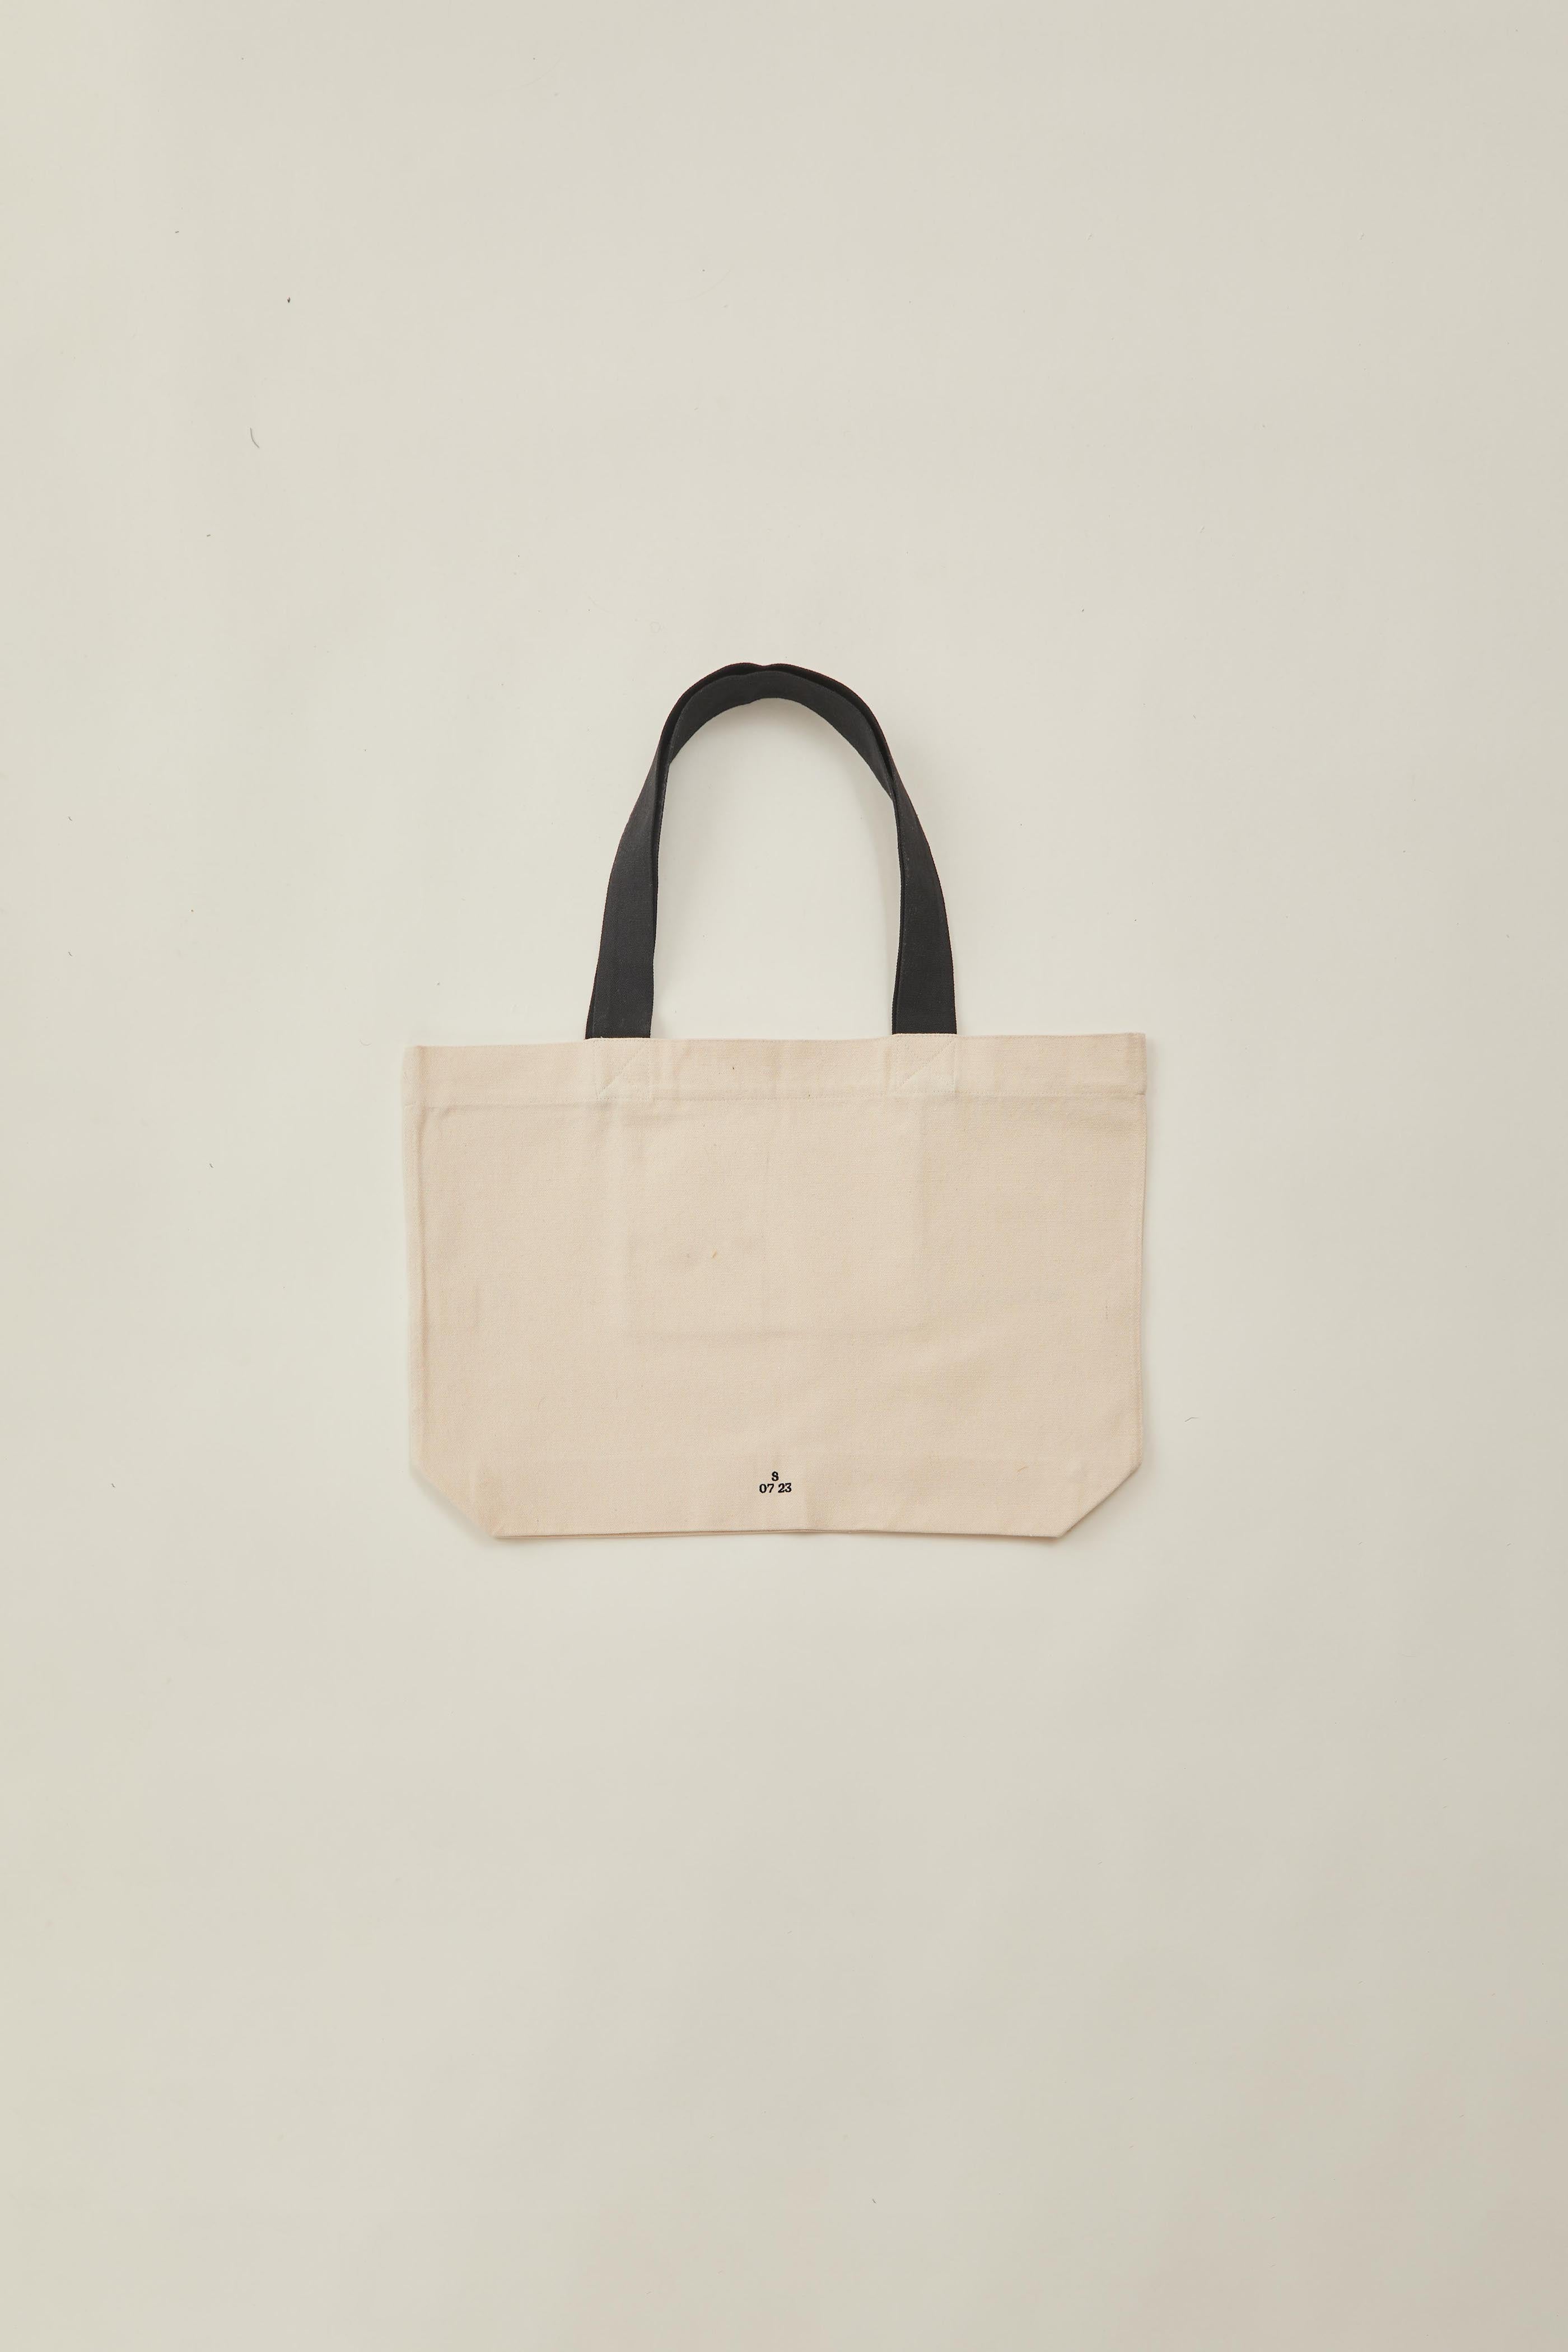 Tote Bag (N°.01) in Natural